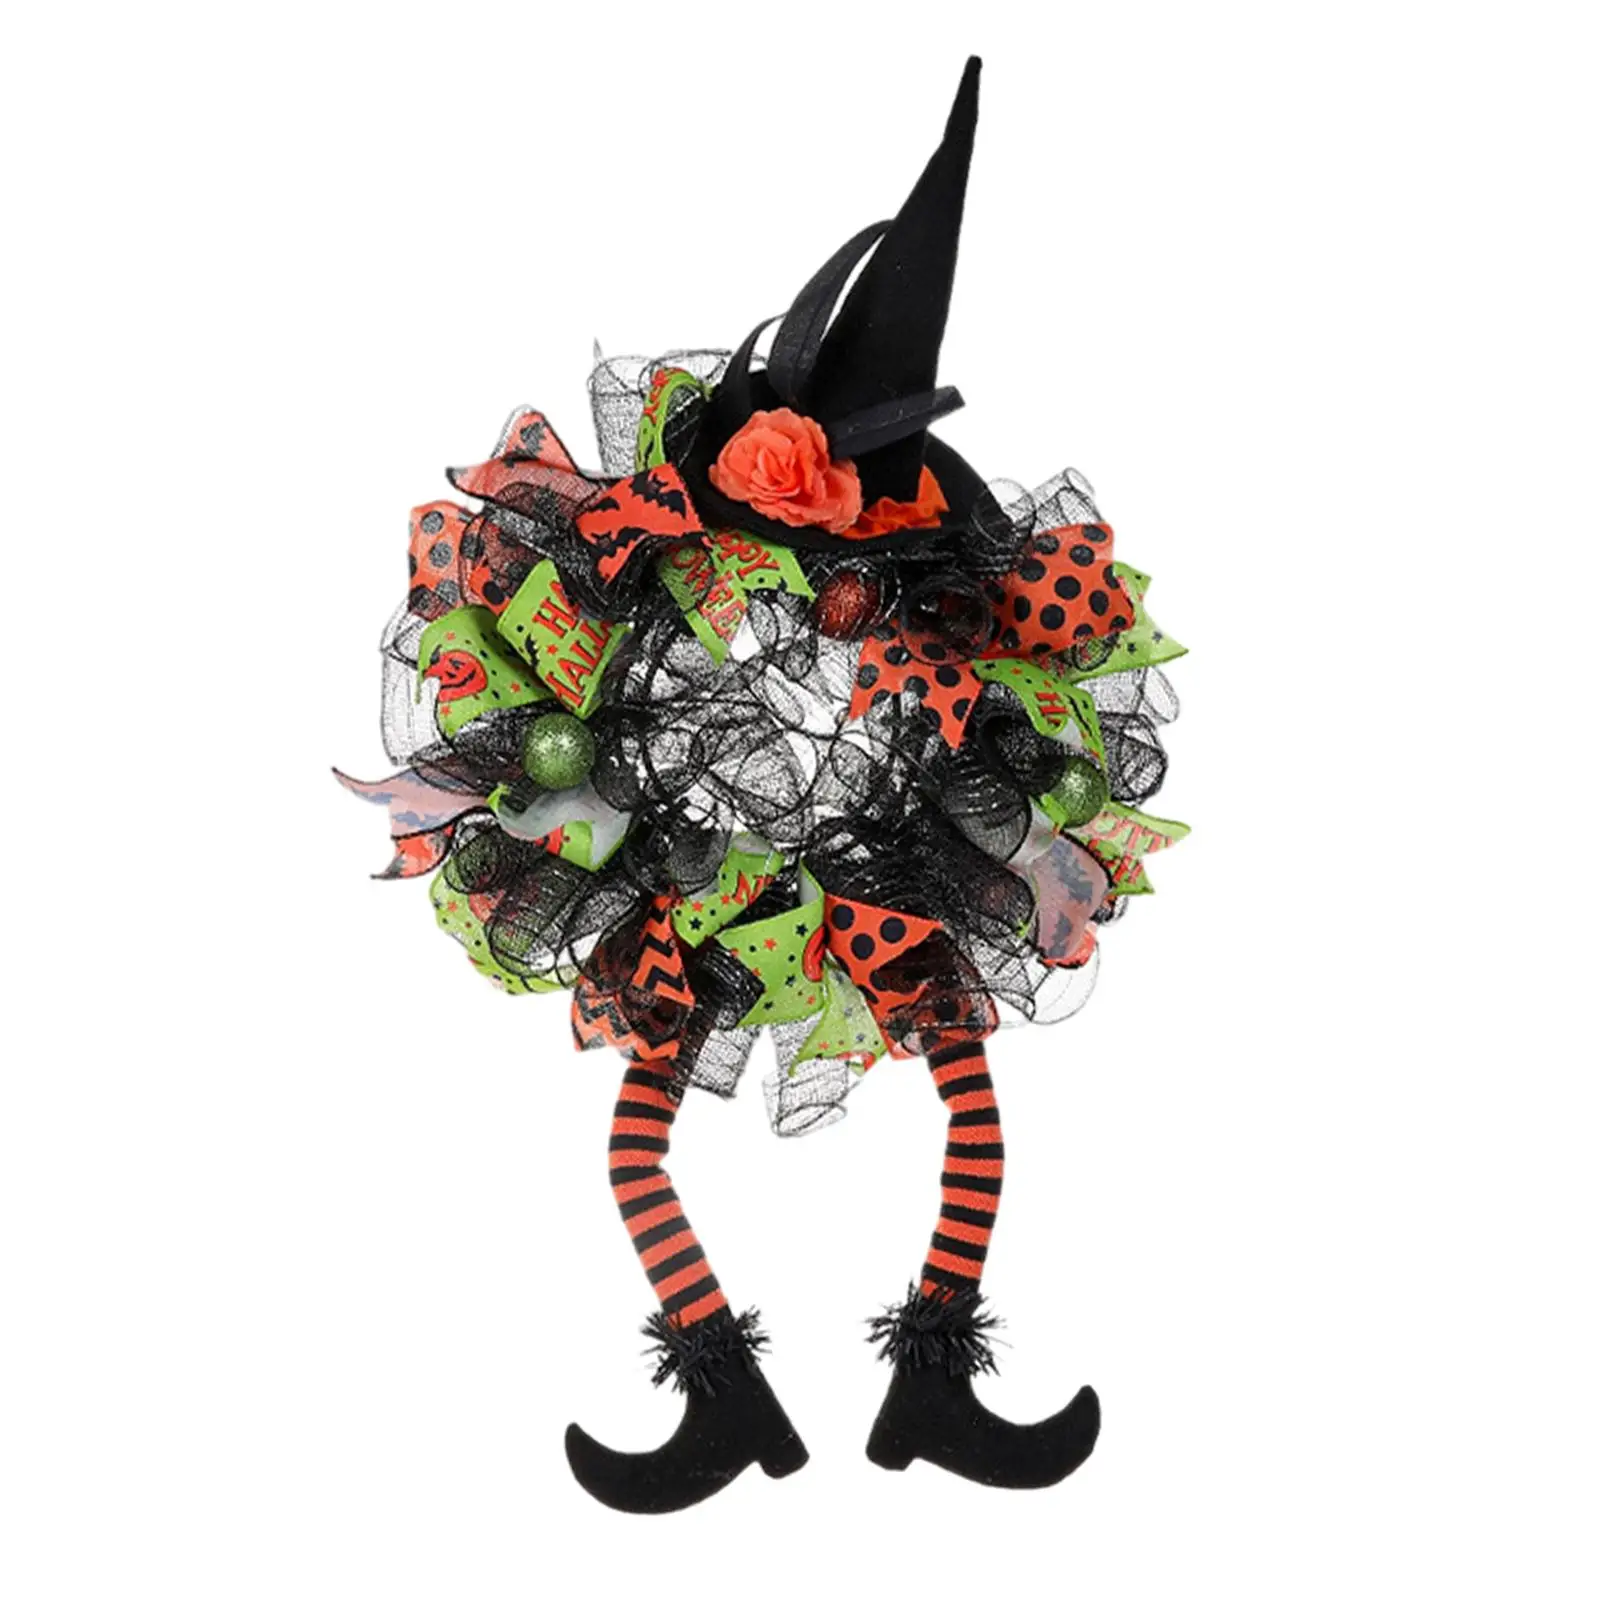 Garland Handmade 29.53x15.75 inch with Witch Hat and Legs Door Wreath Artificial Wreath for Window Festival Door Party Halloween